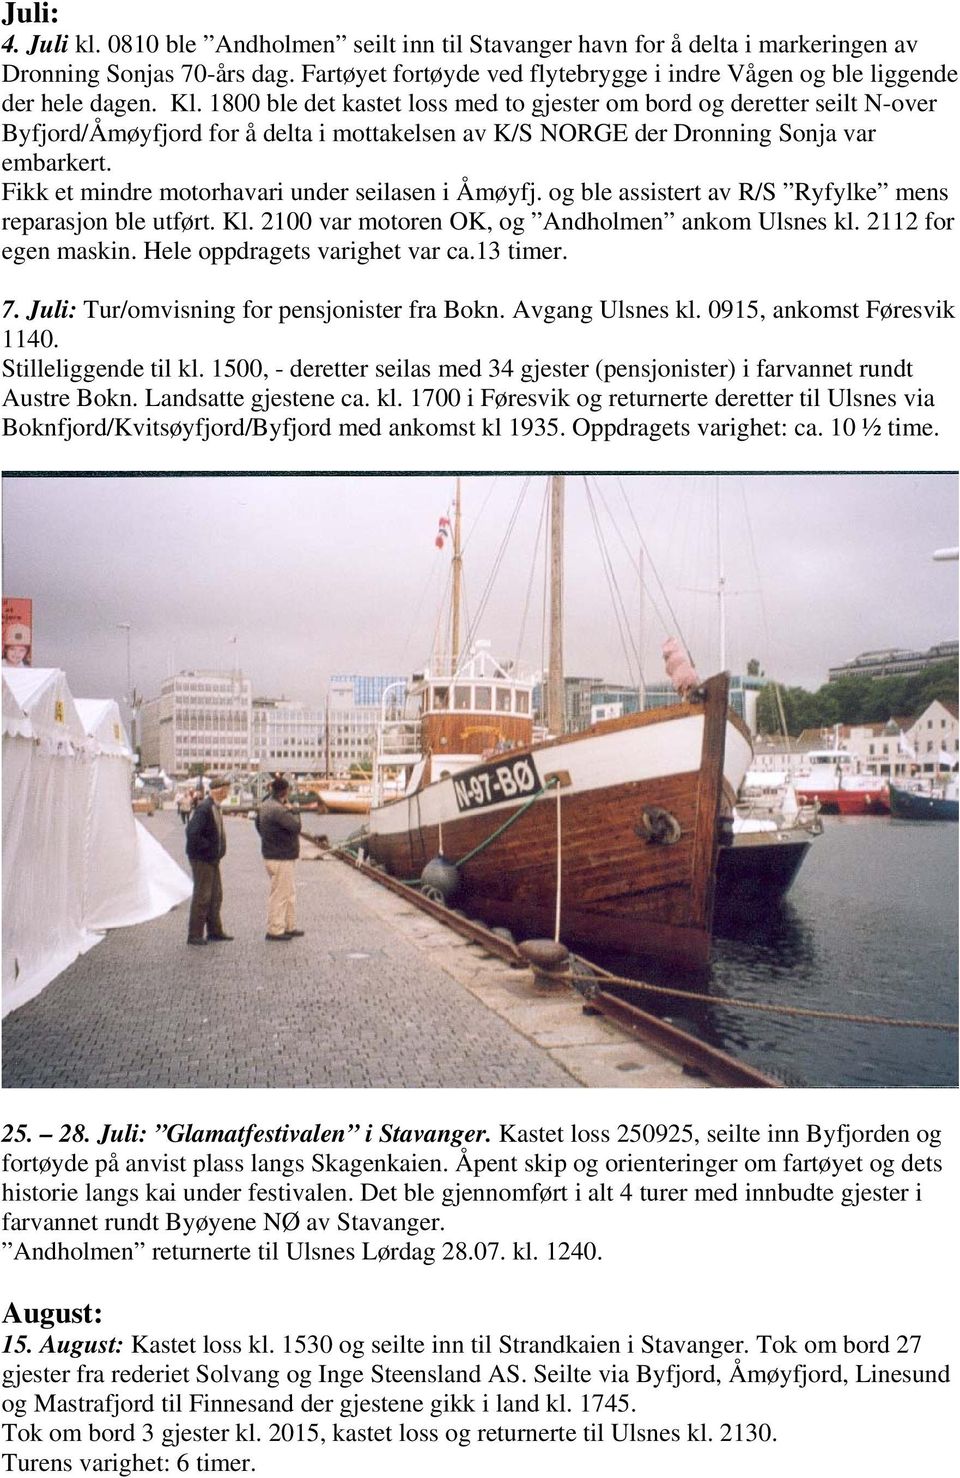 1800 ble det kastet loss med to gjester om bord og deretter seilt N-over Byfjord/Åmøyfjord for å delta i mottakelsen av K/S NORGE der Dronning Sonja var embarkert.